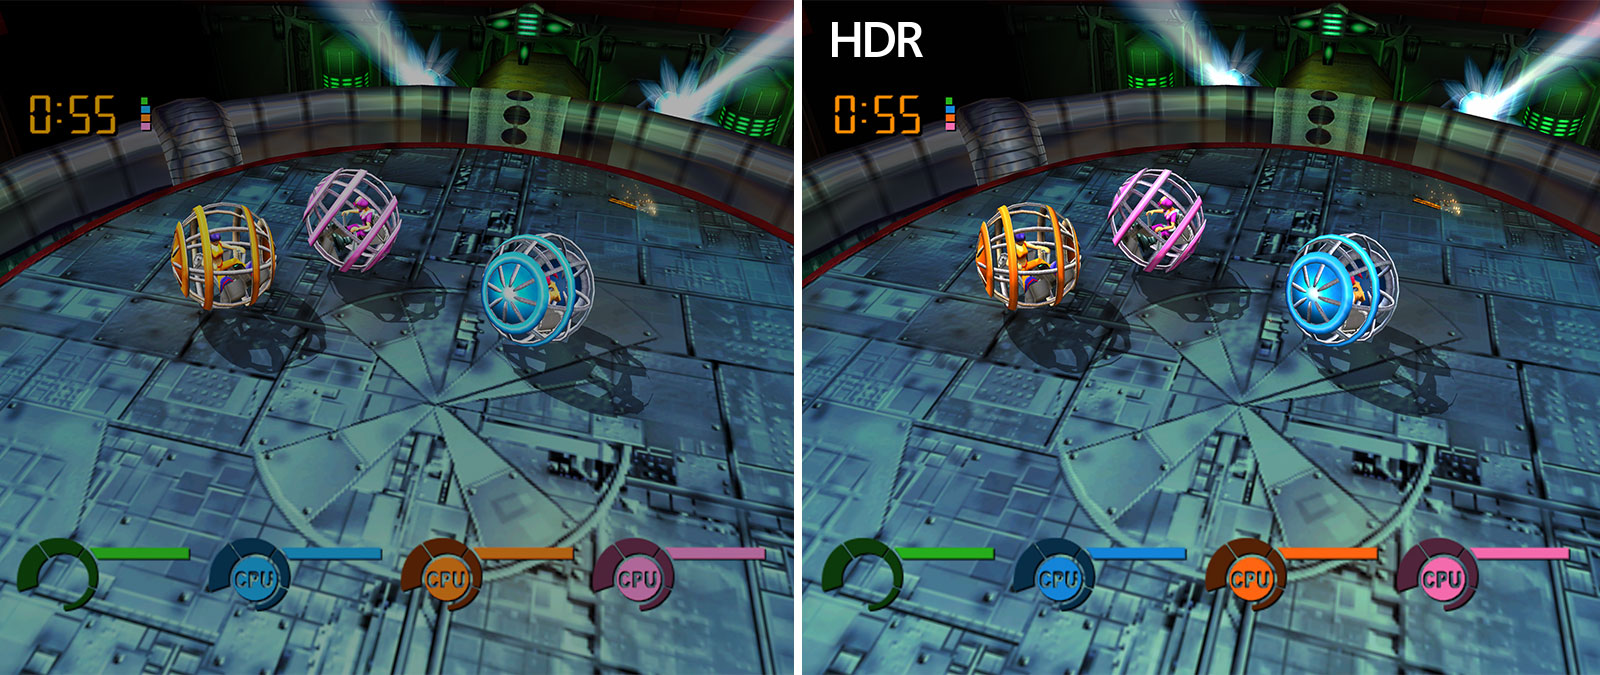 Снимки экрана с игрой Fusion Frenzy для сравнения, на одном из них изображение ярче благодаря работе функции Auto HDR